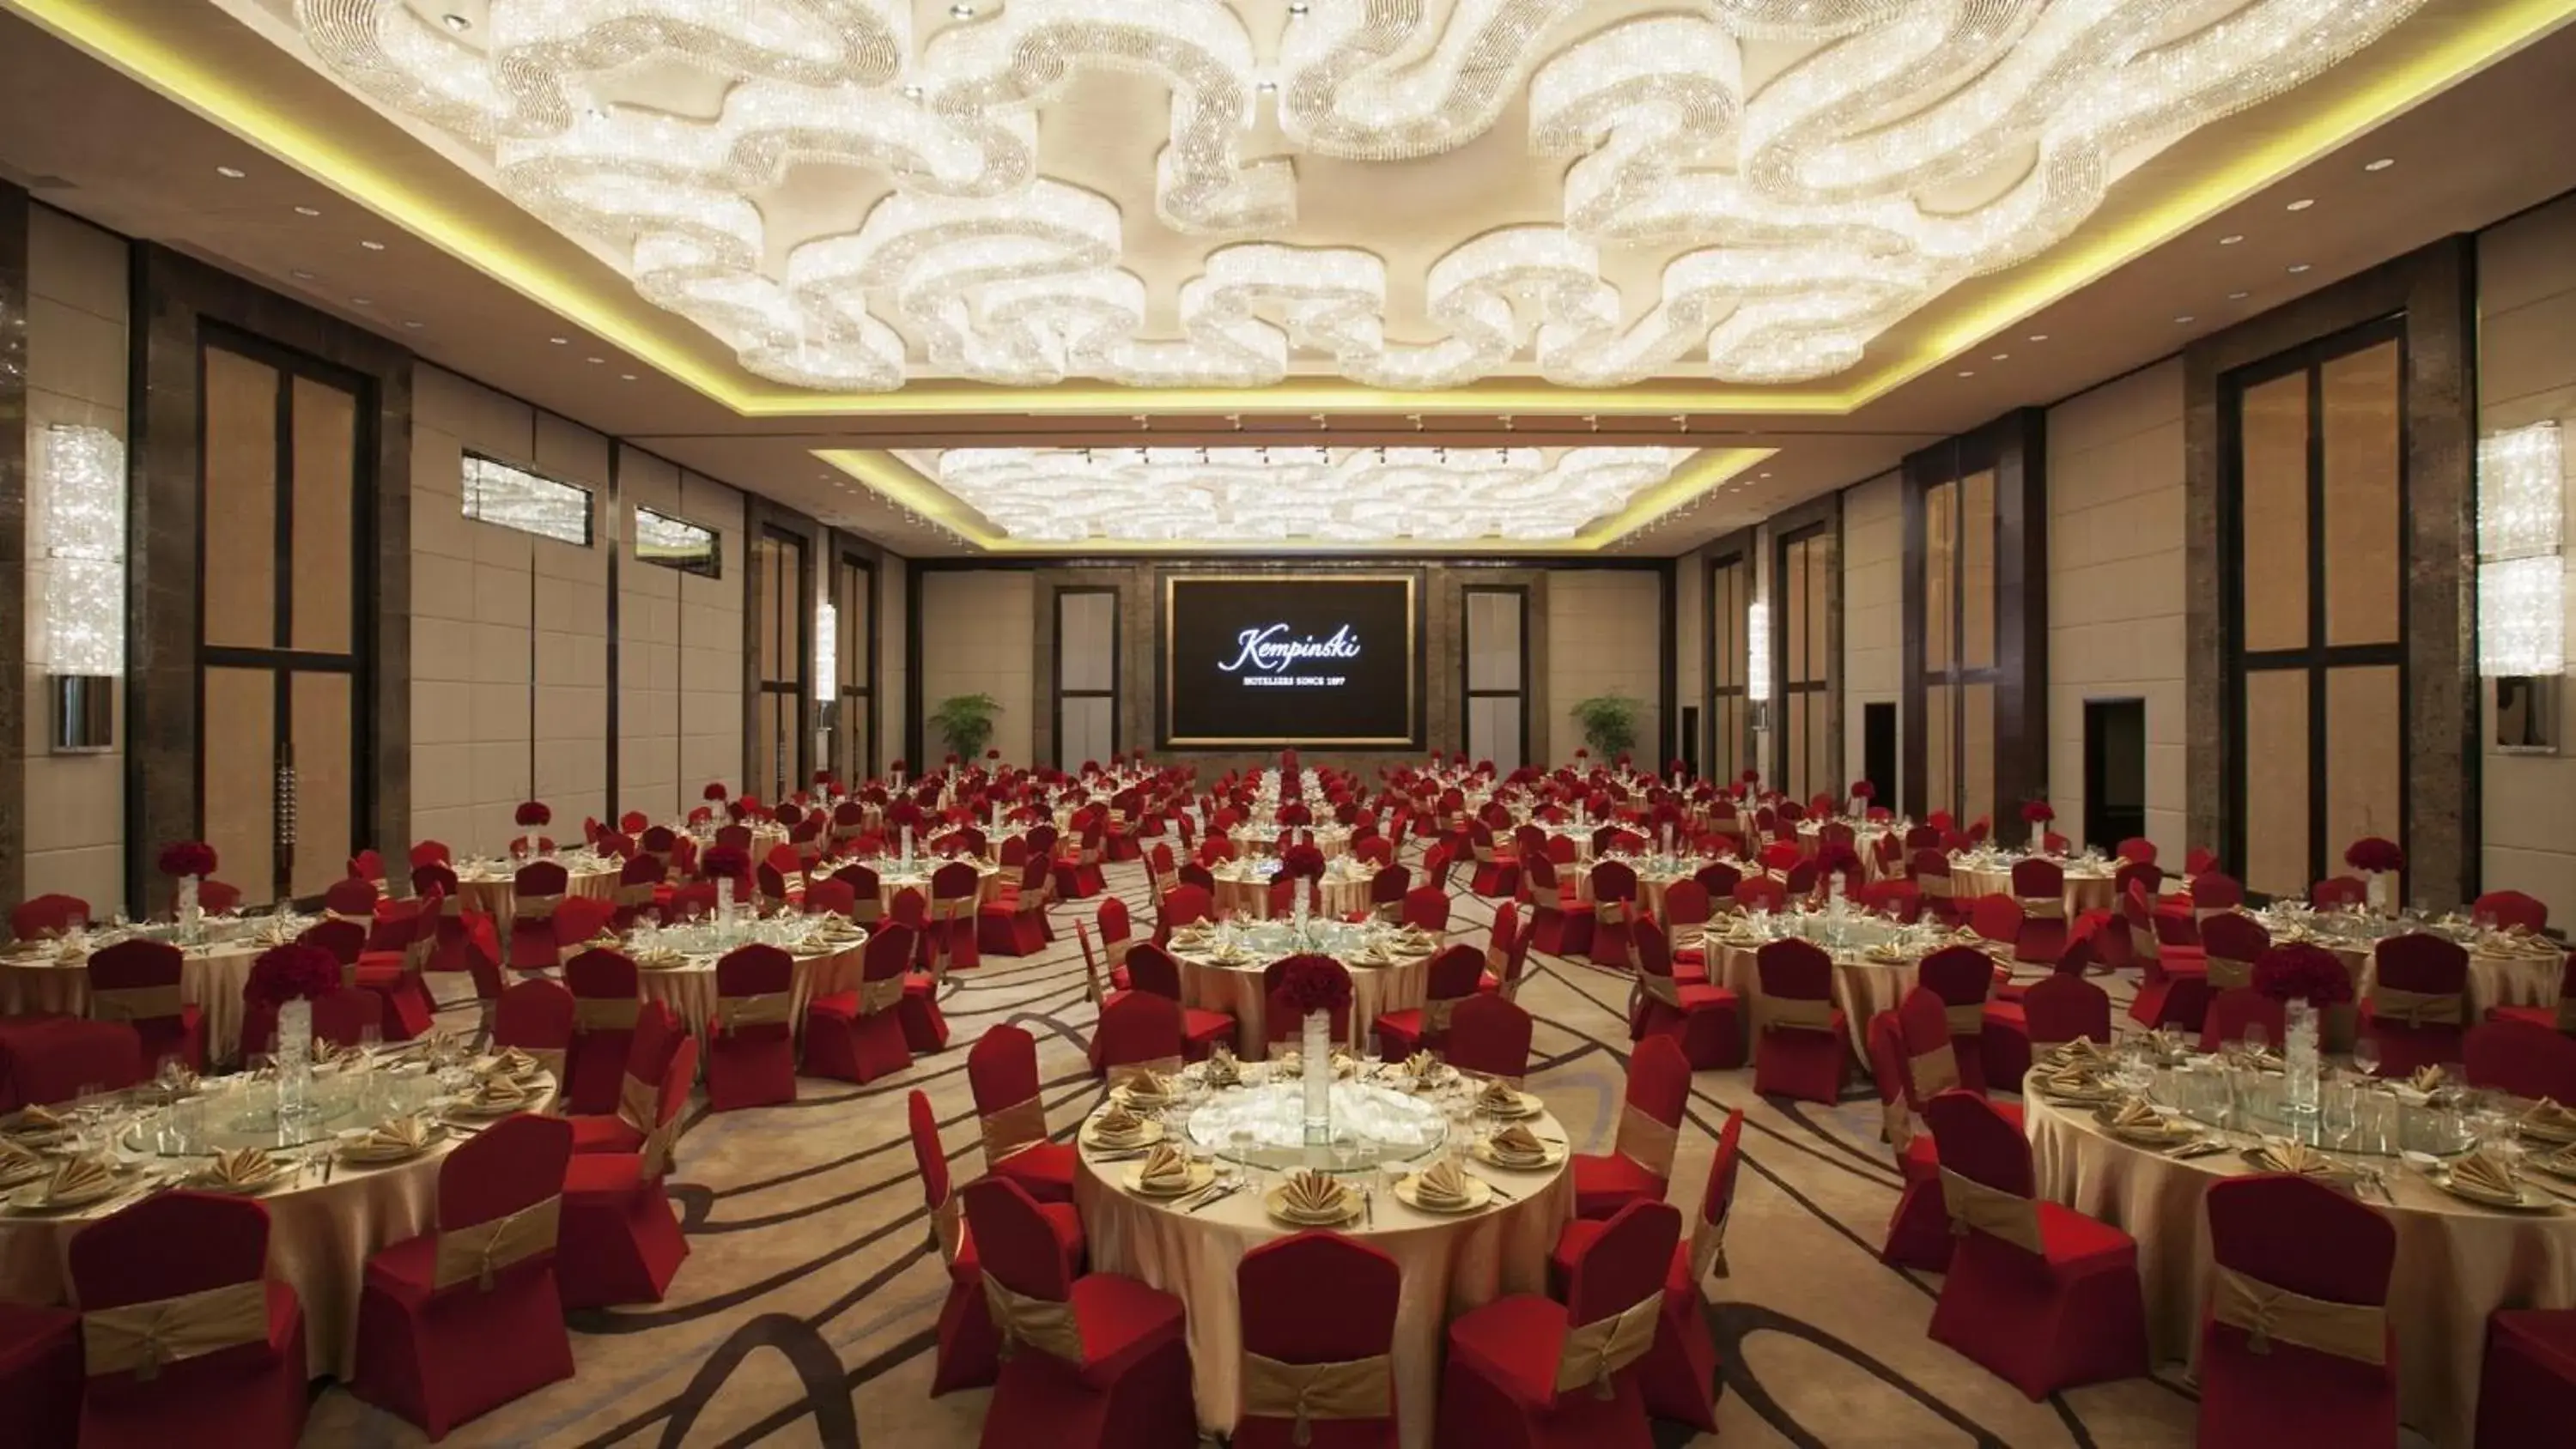 Banquet/Function facilities, Banquet Facilities in Kempinski Hotel Taiyuan